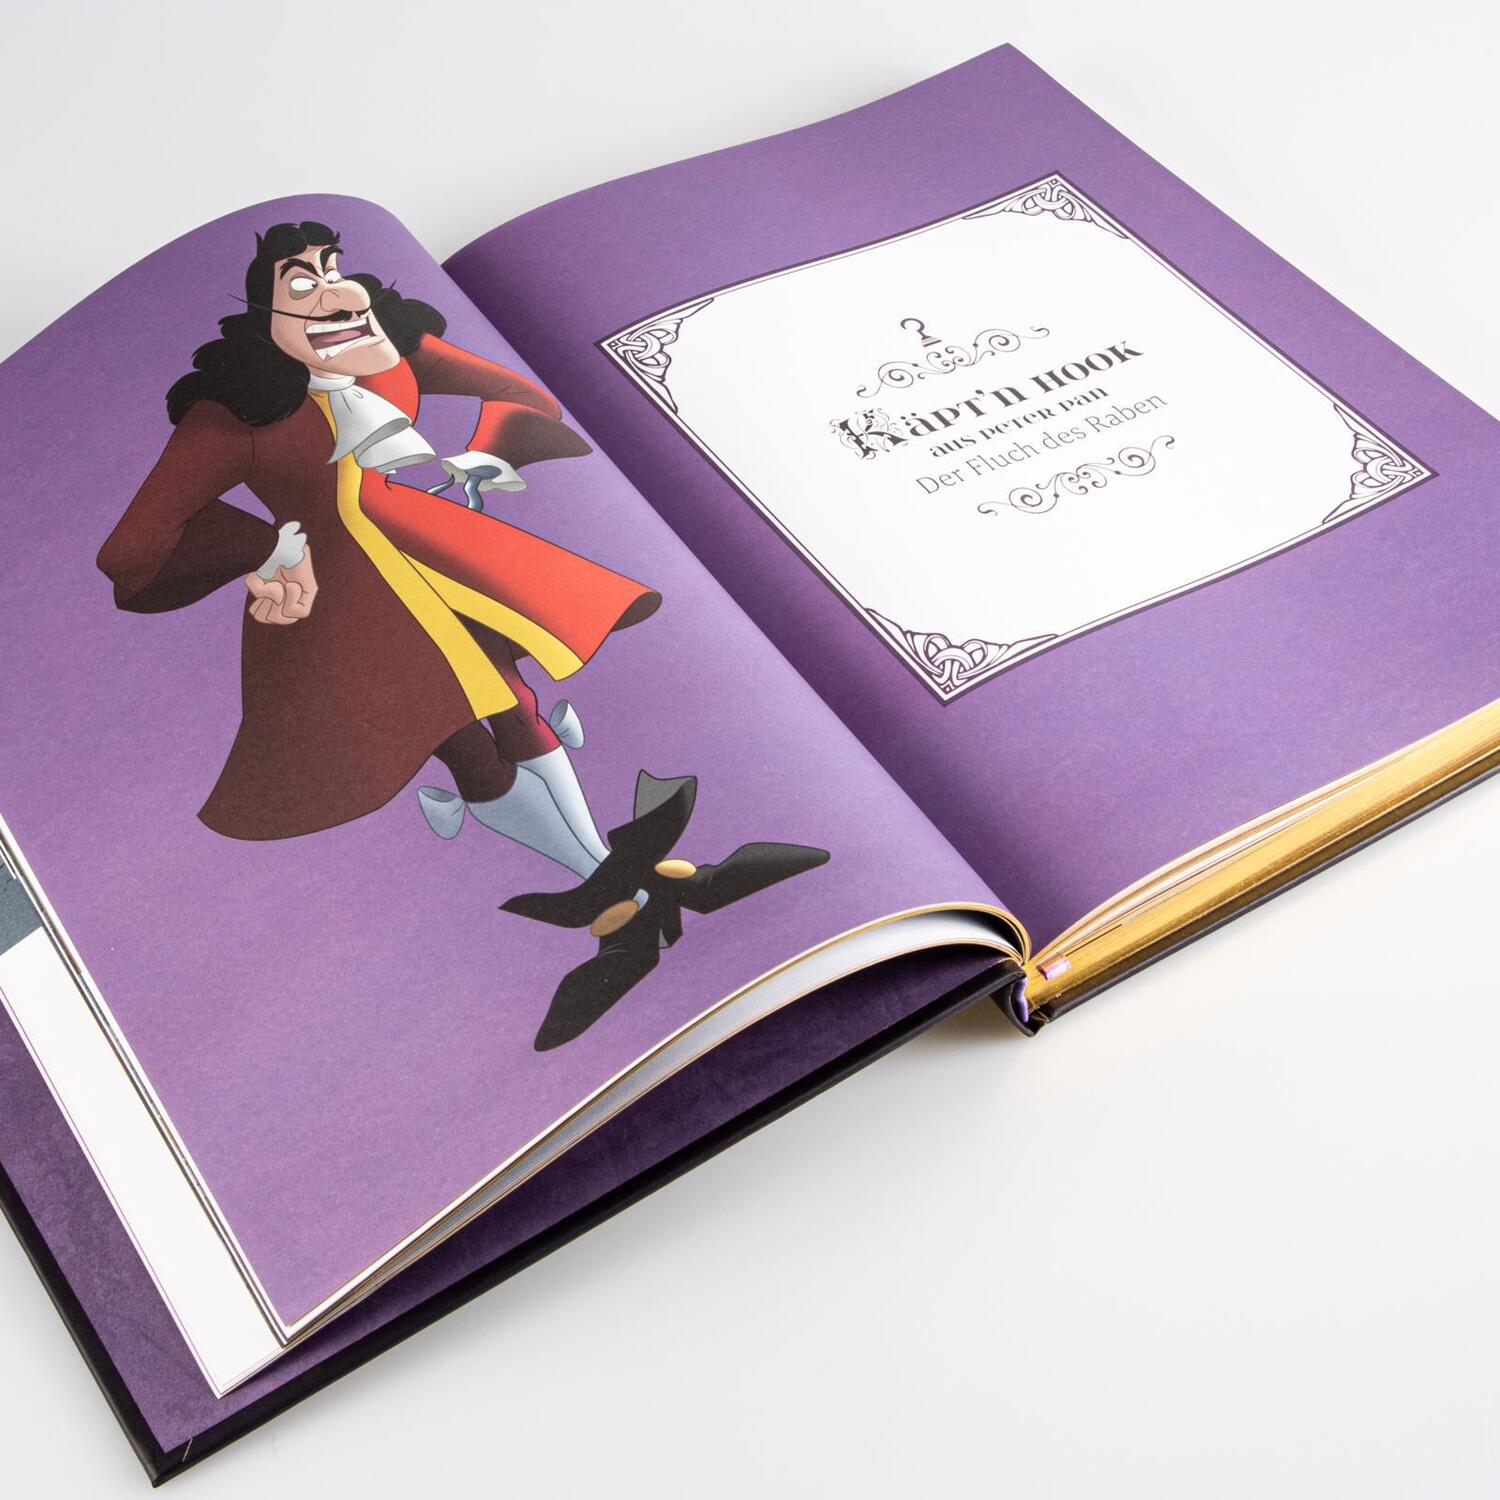 Bild: 9783551280633 | Disney: Das große goldene Buch der Villains | Walt Disney | Buch